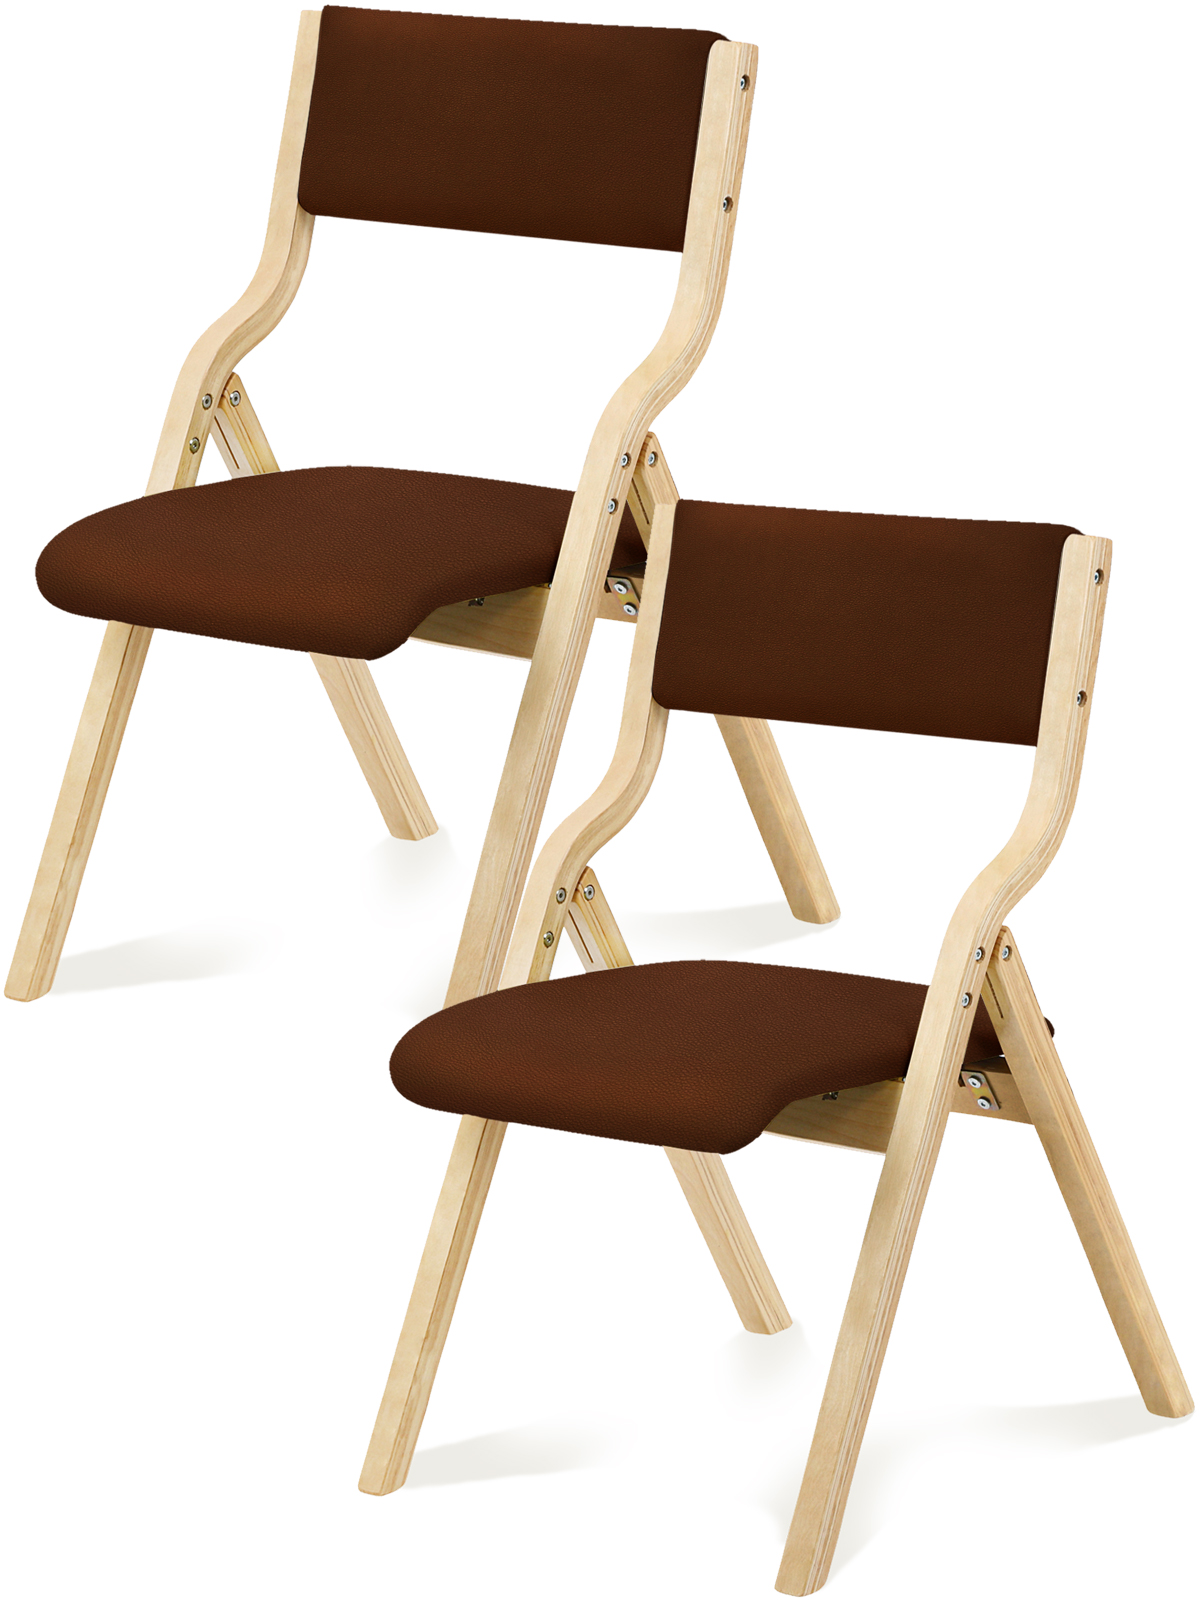 1年保証 ダイニングチェア 折りたたみ椅子 2脚セット 完成品 リビングチェア PU 木製 天然木 おしゃれ 省スペース 収納便利 玄関 脱衣所 介護  スツール